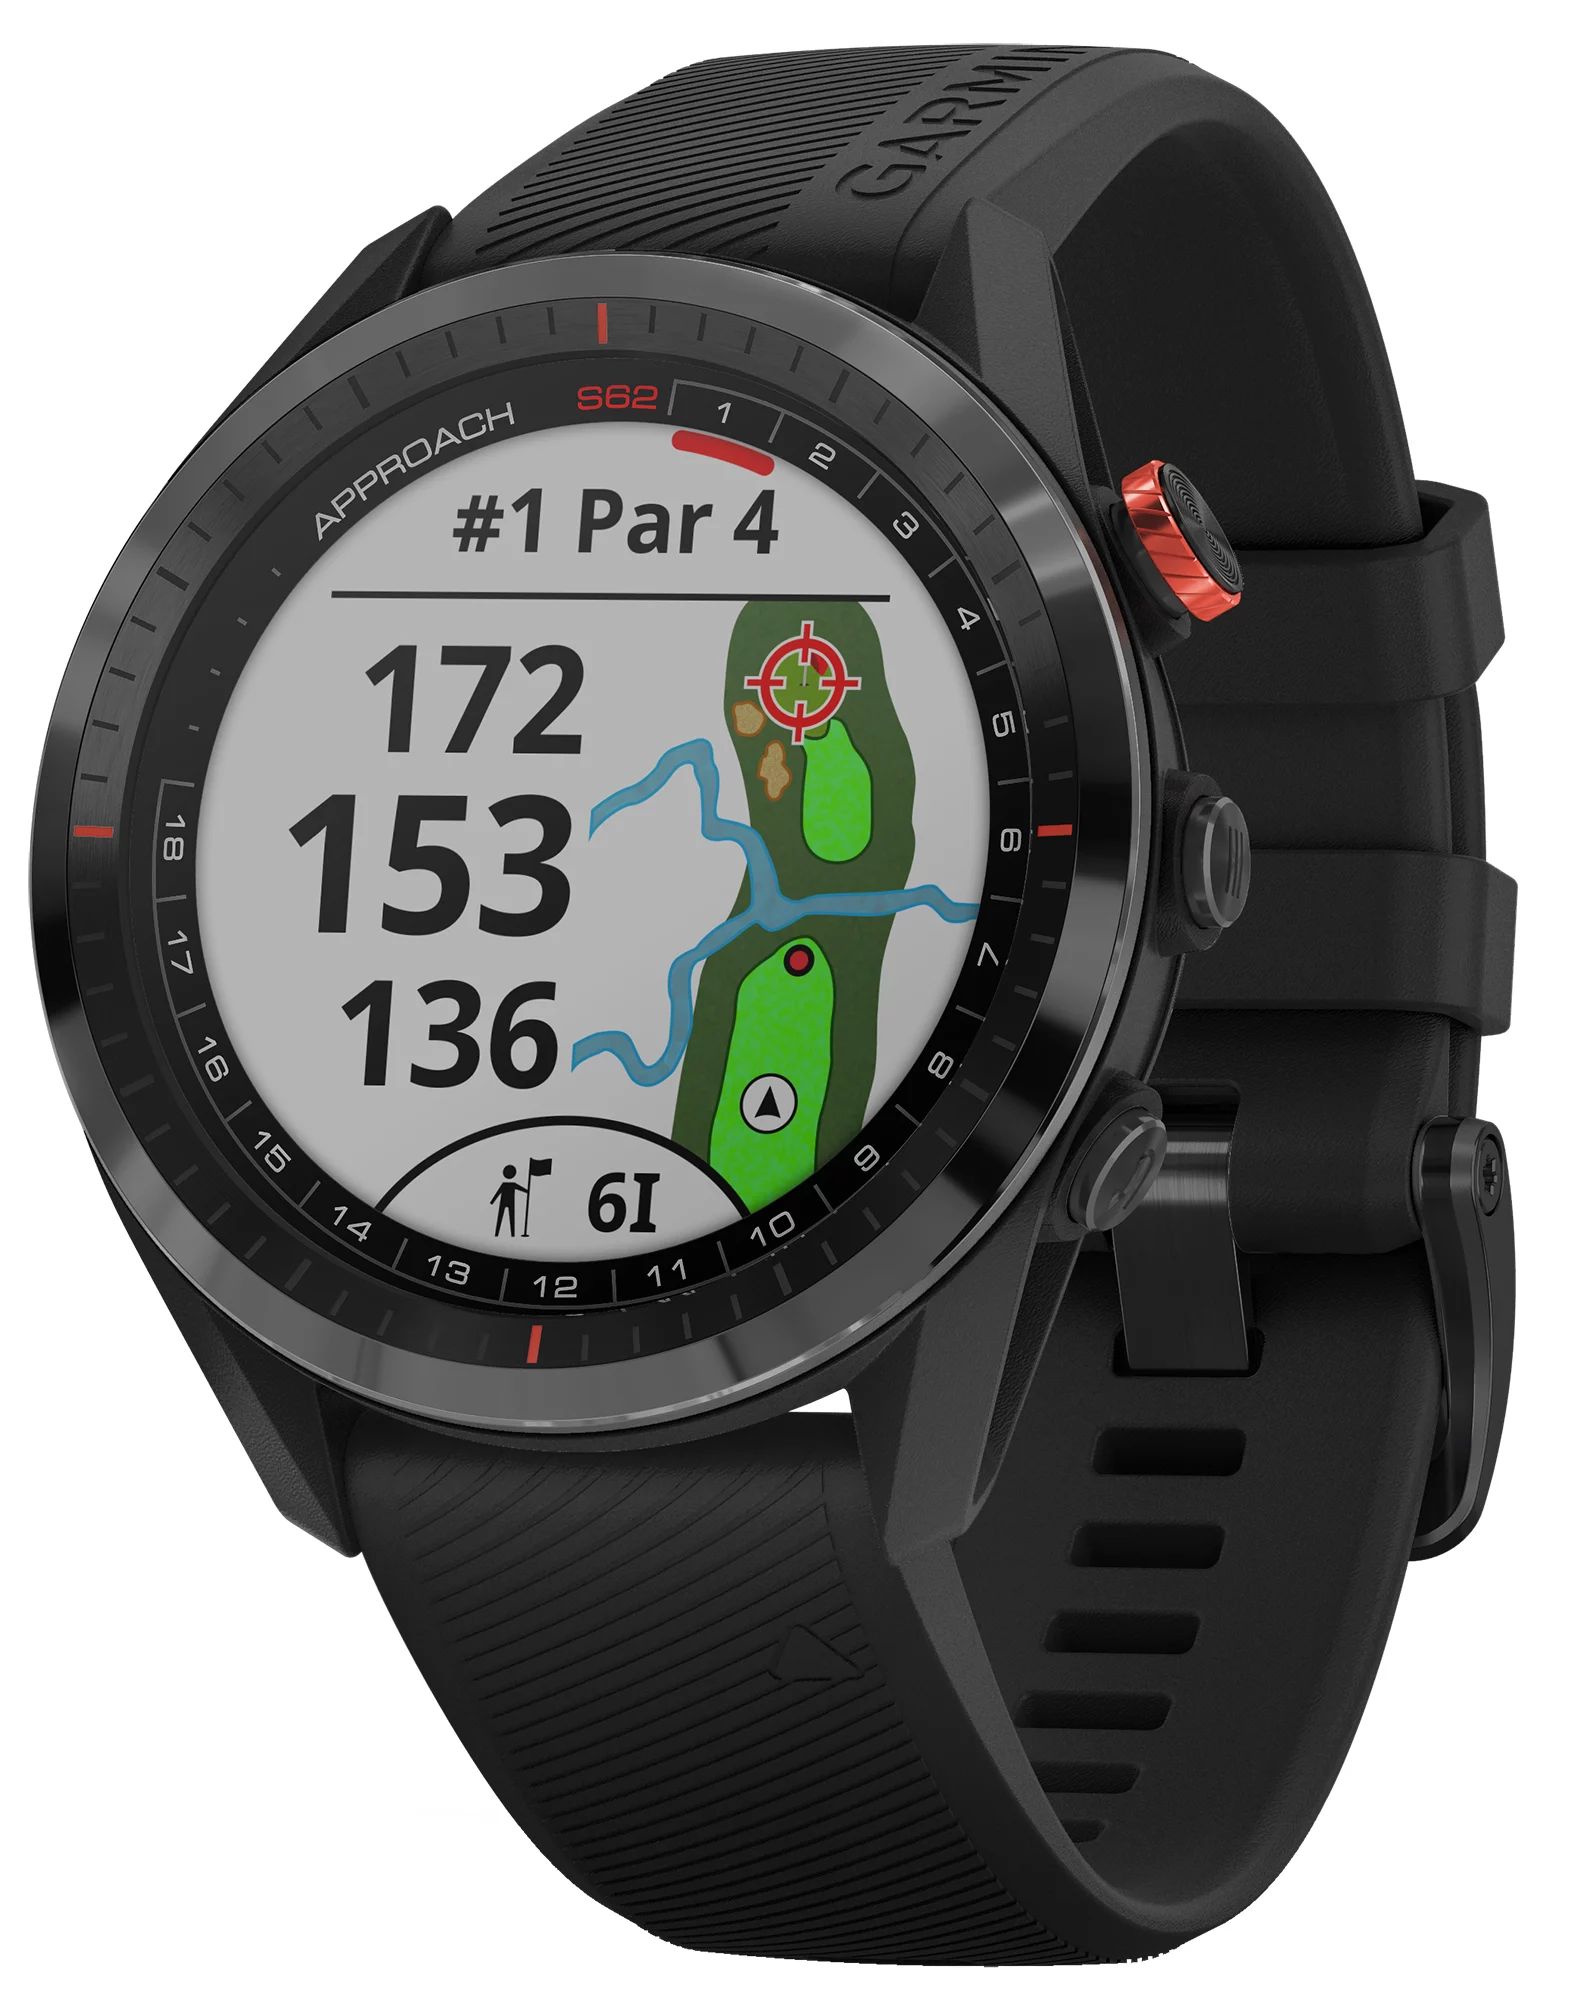 Garmin Approach S62 Premium GPS Golf Watch, green | Dick's Sporting Goods